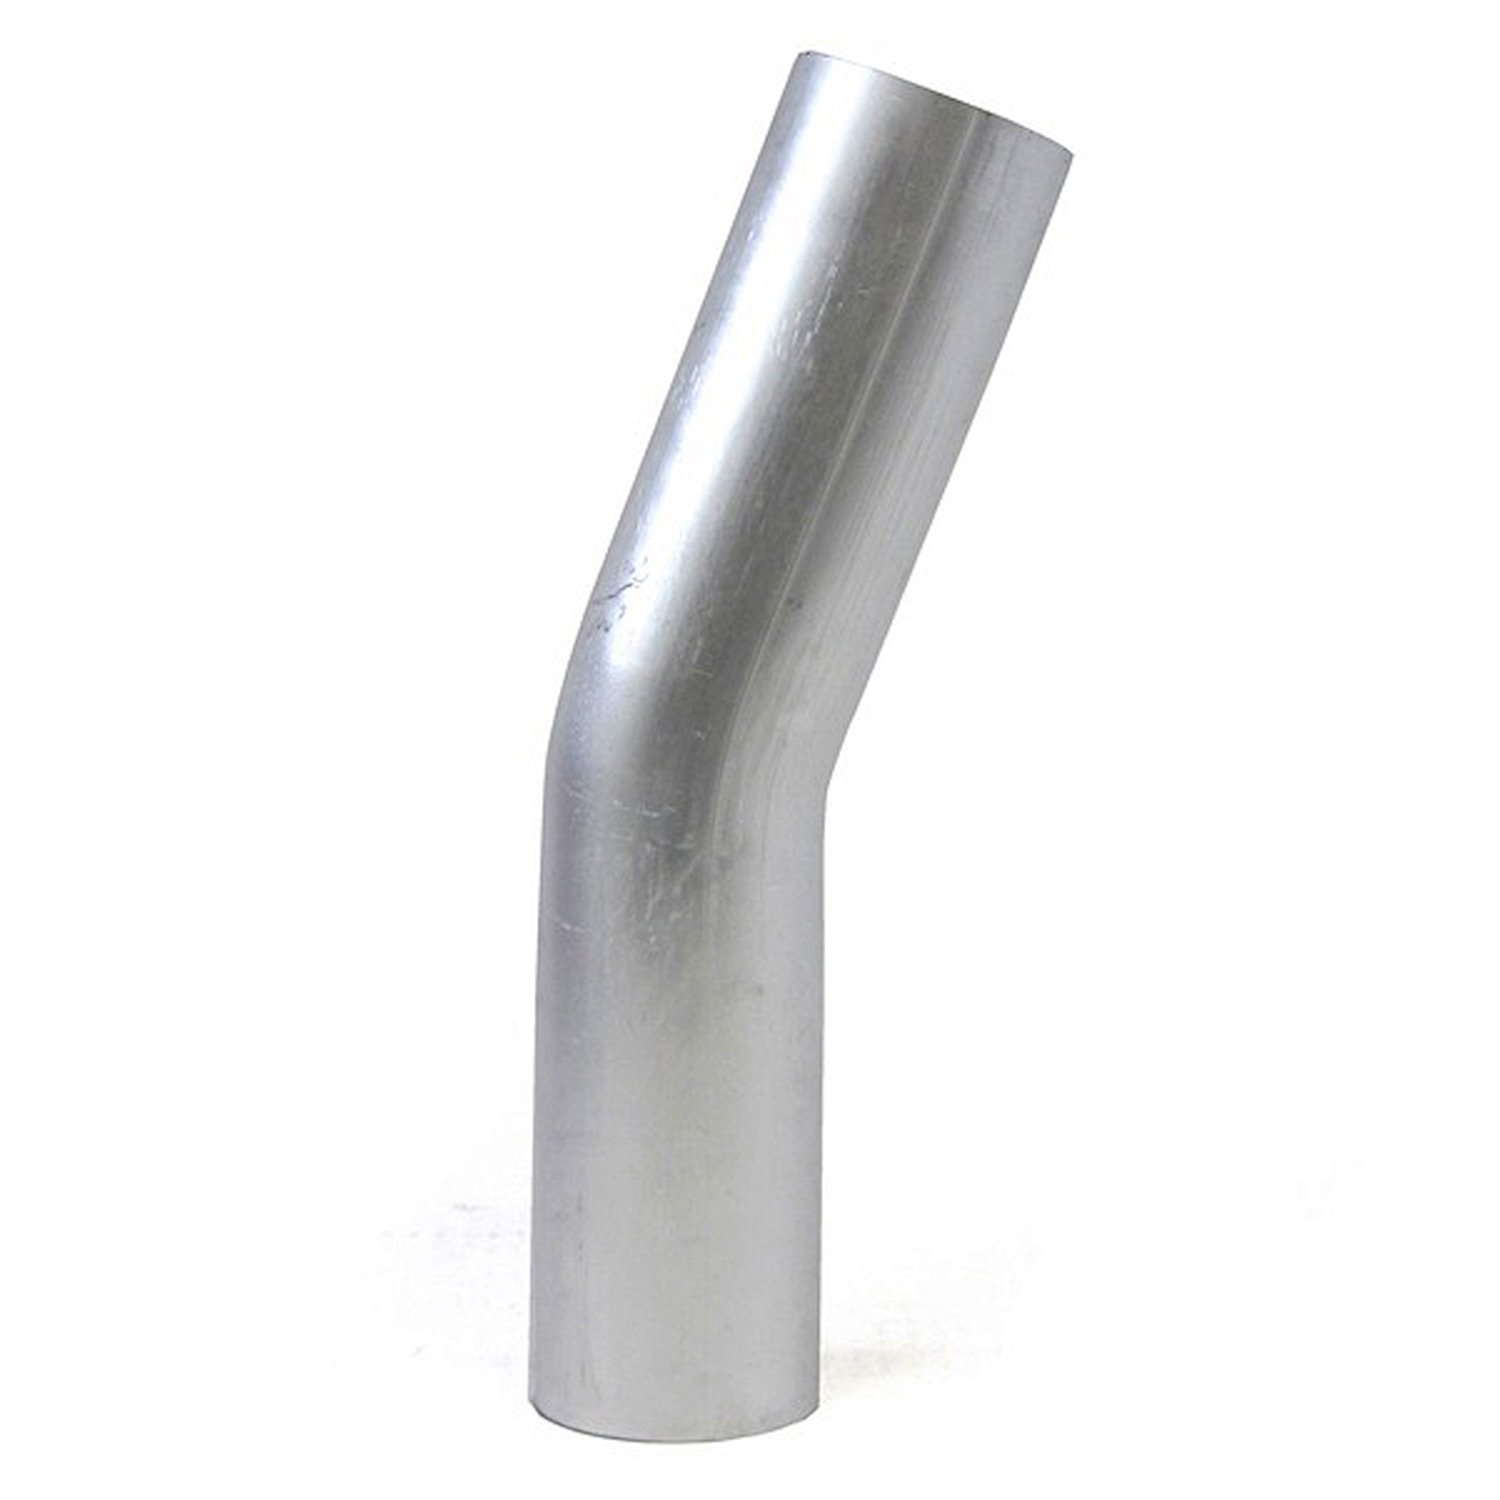 AT20-250-CLR-4 Aluminum Elbow Tube, 6061 Aluminum, 20-Degree Bend Elbow Tubing, 2-1/2 in. OD, Large Radius, 4 in. CLR